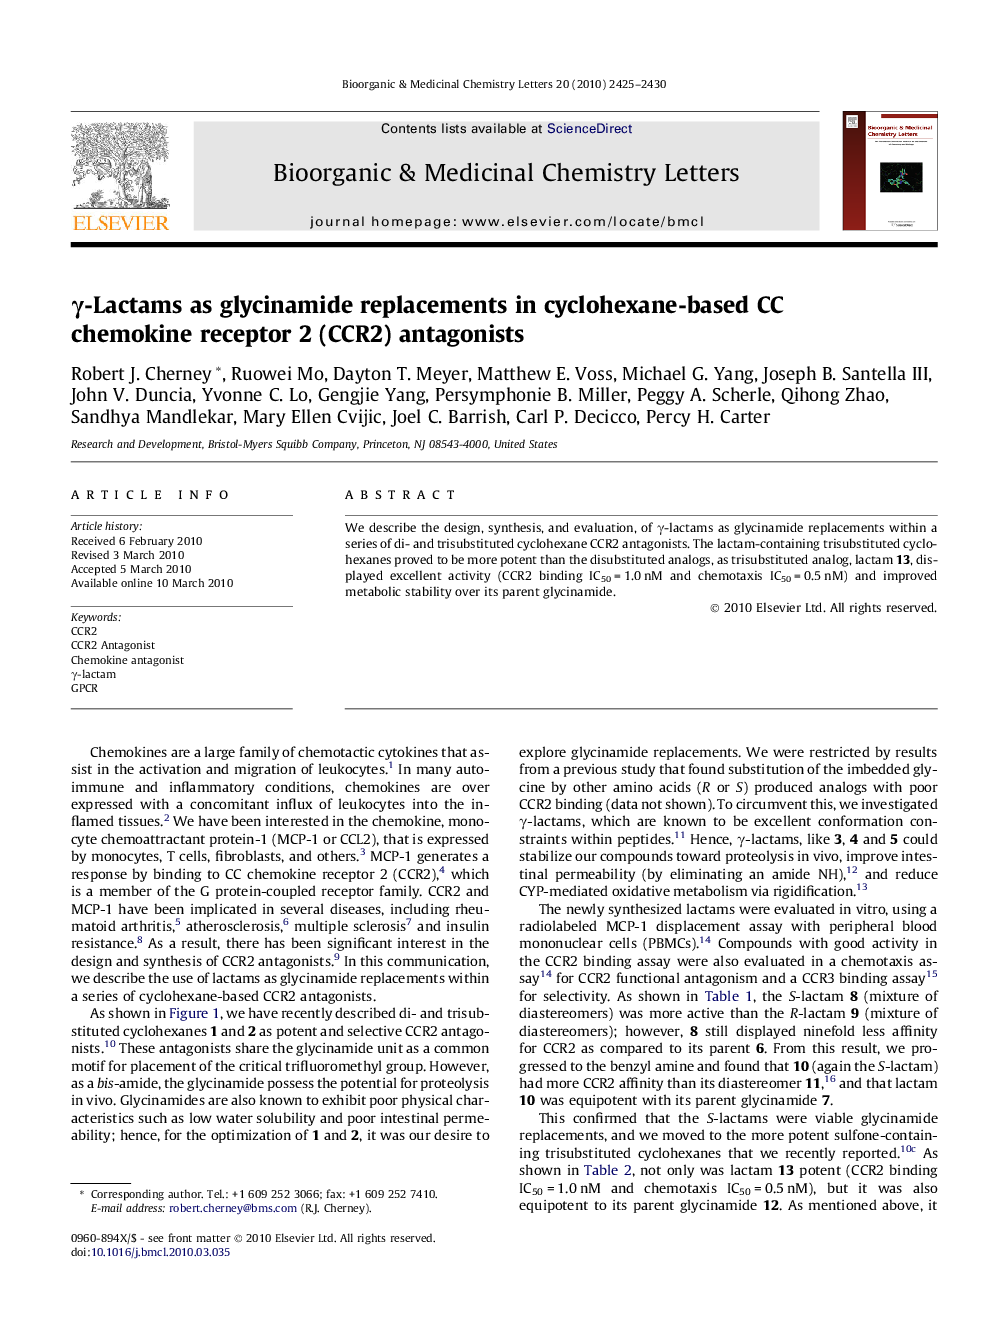 γ-Lactams as glycinamide replacements in cyclohexane-based CC chemokine receptor 2 (CCR2) antagonists